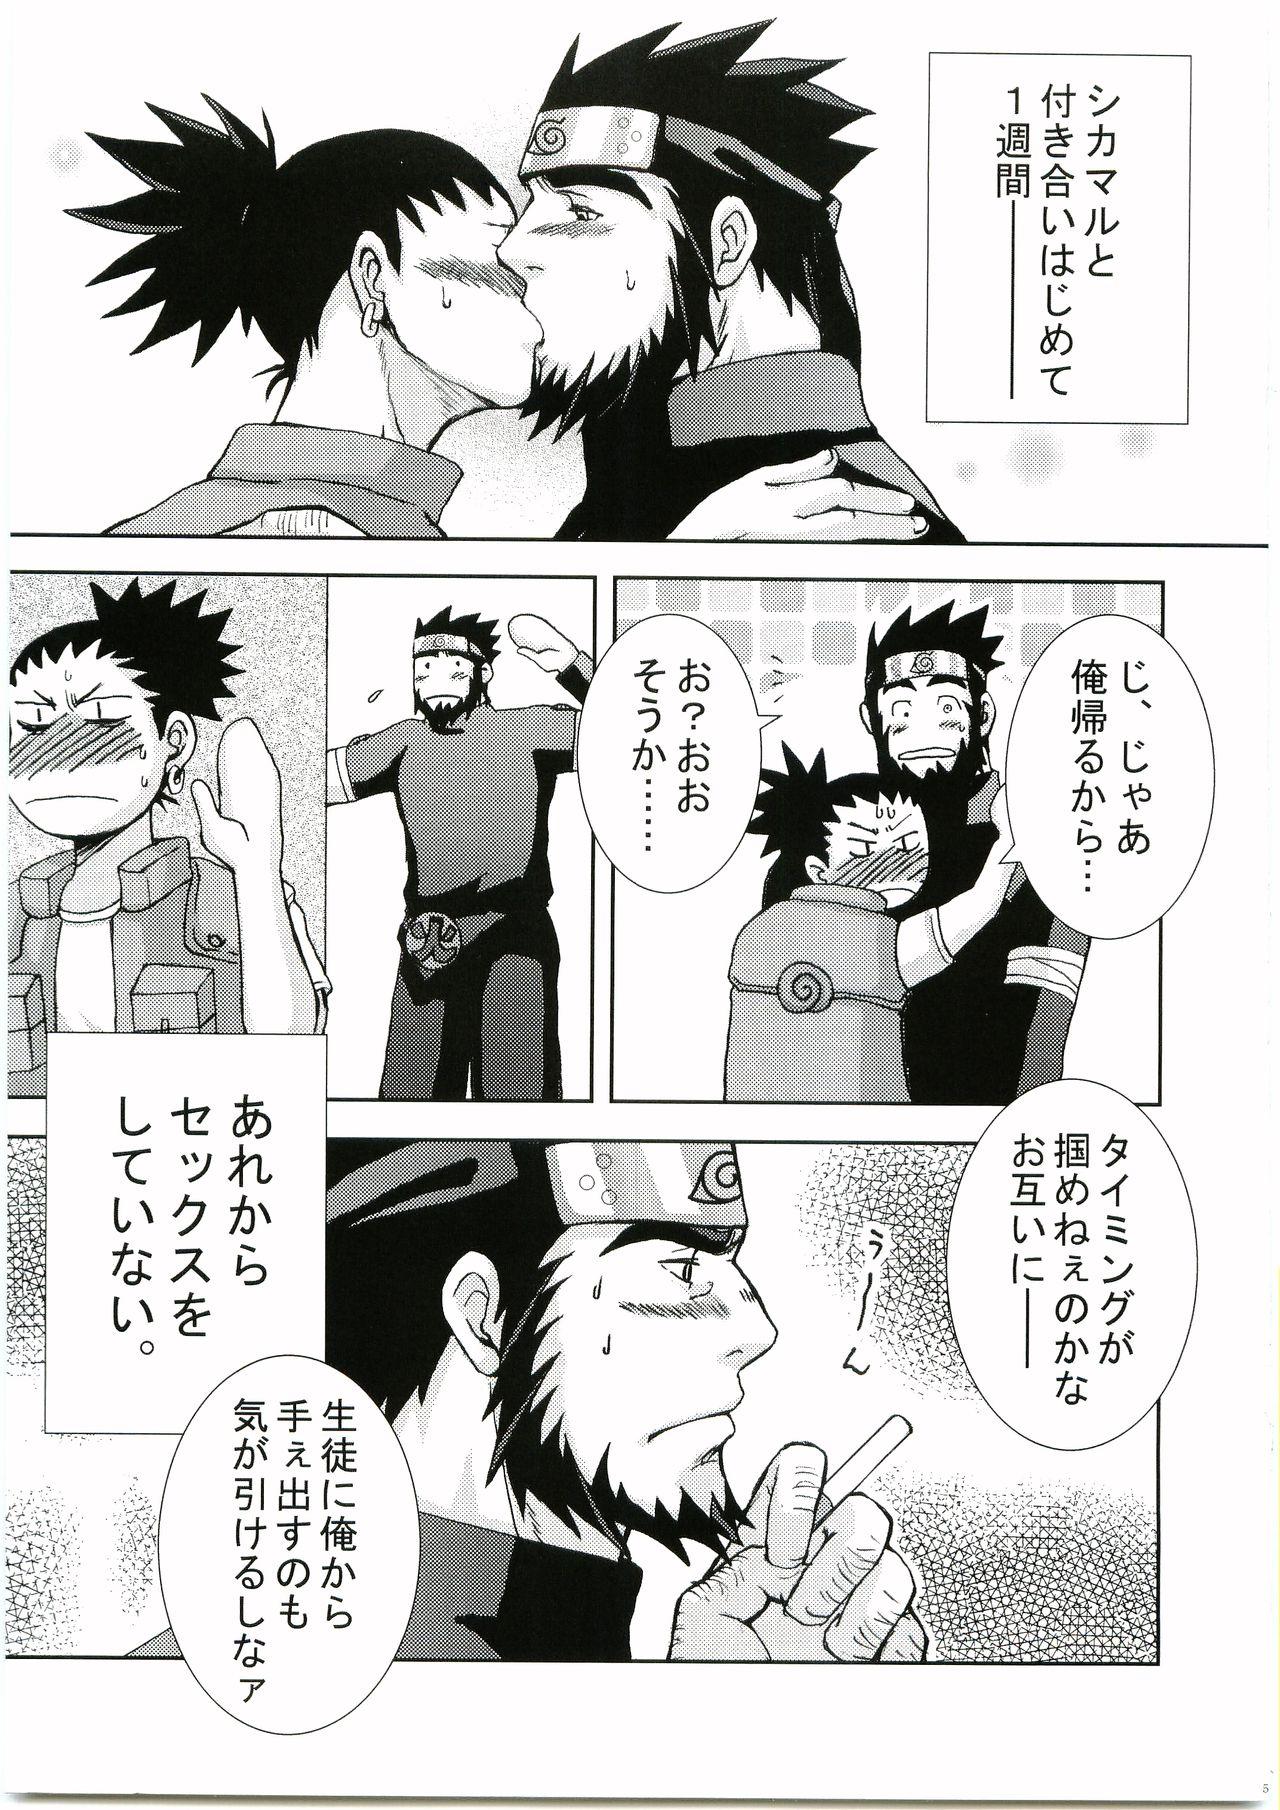 Dildo Fucking Konoha Hige Jouka Ni - Naruto Neighbor - Page 4